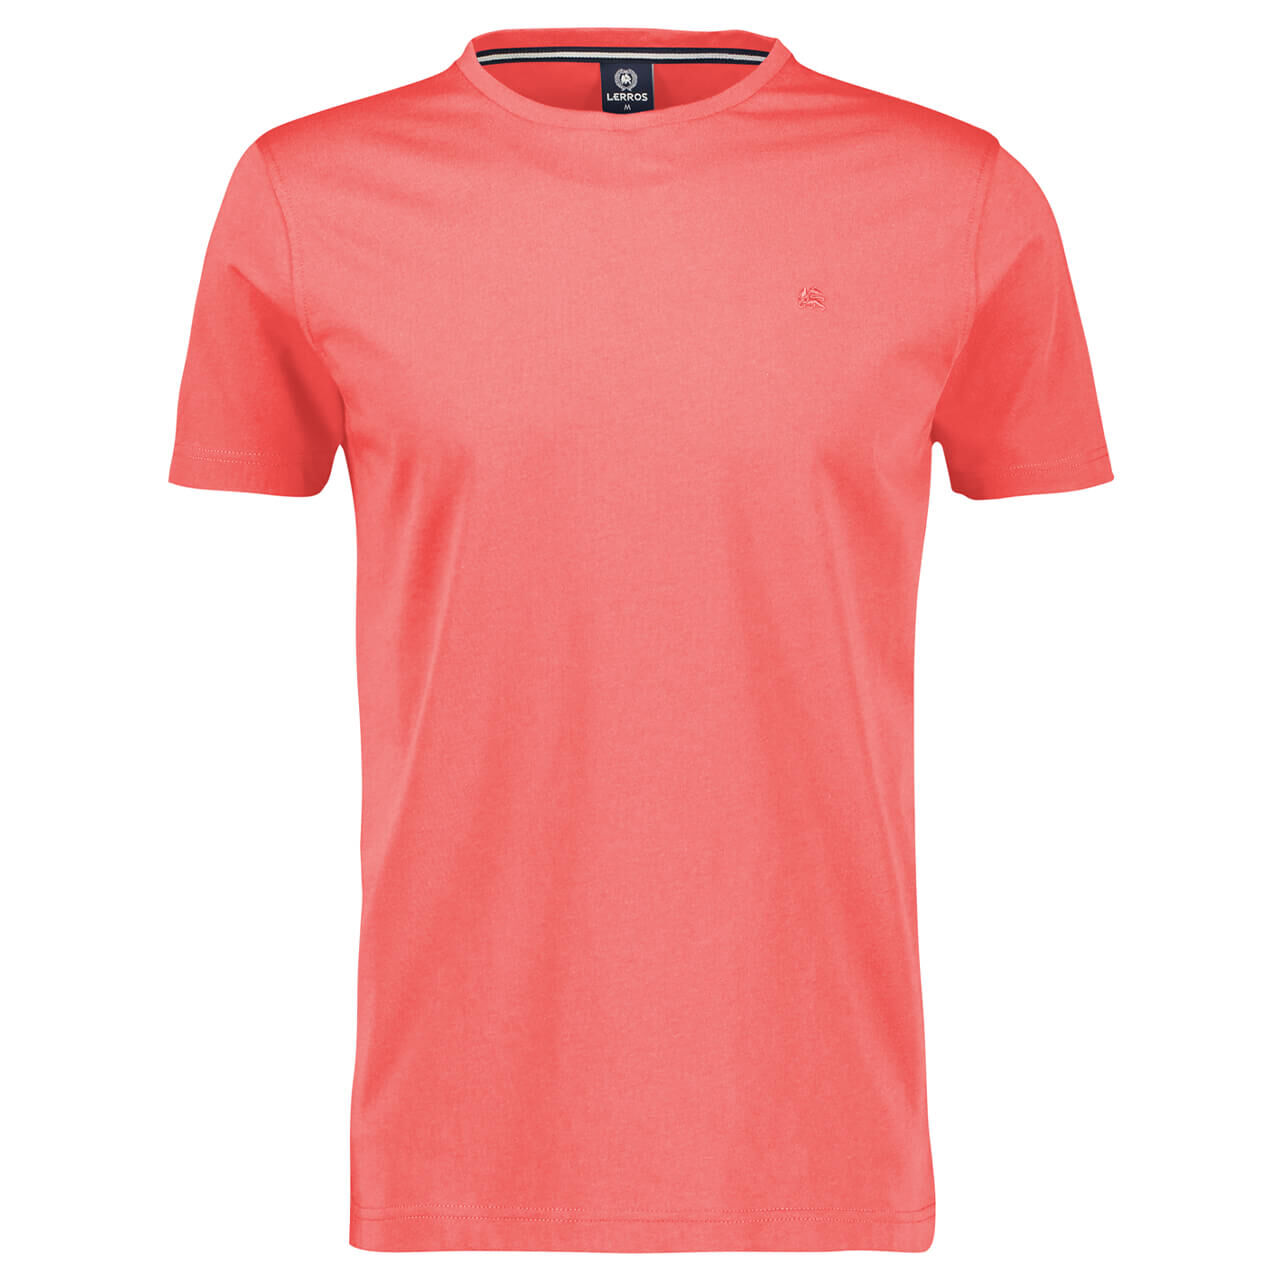 Lerros T-Shirt für Herren in Rotpink, FarbNr.: 333